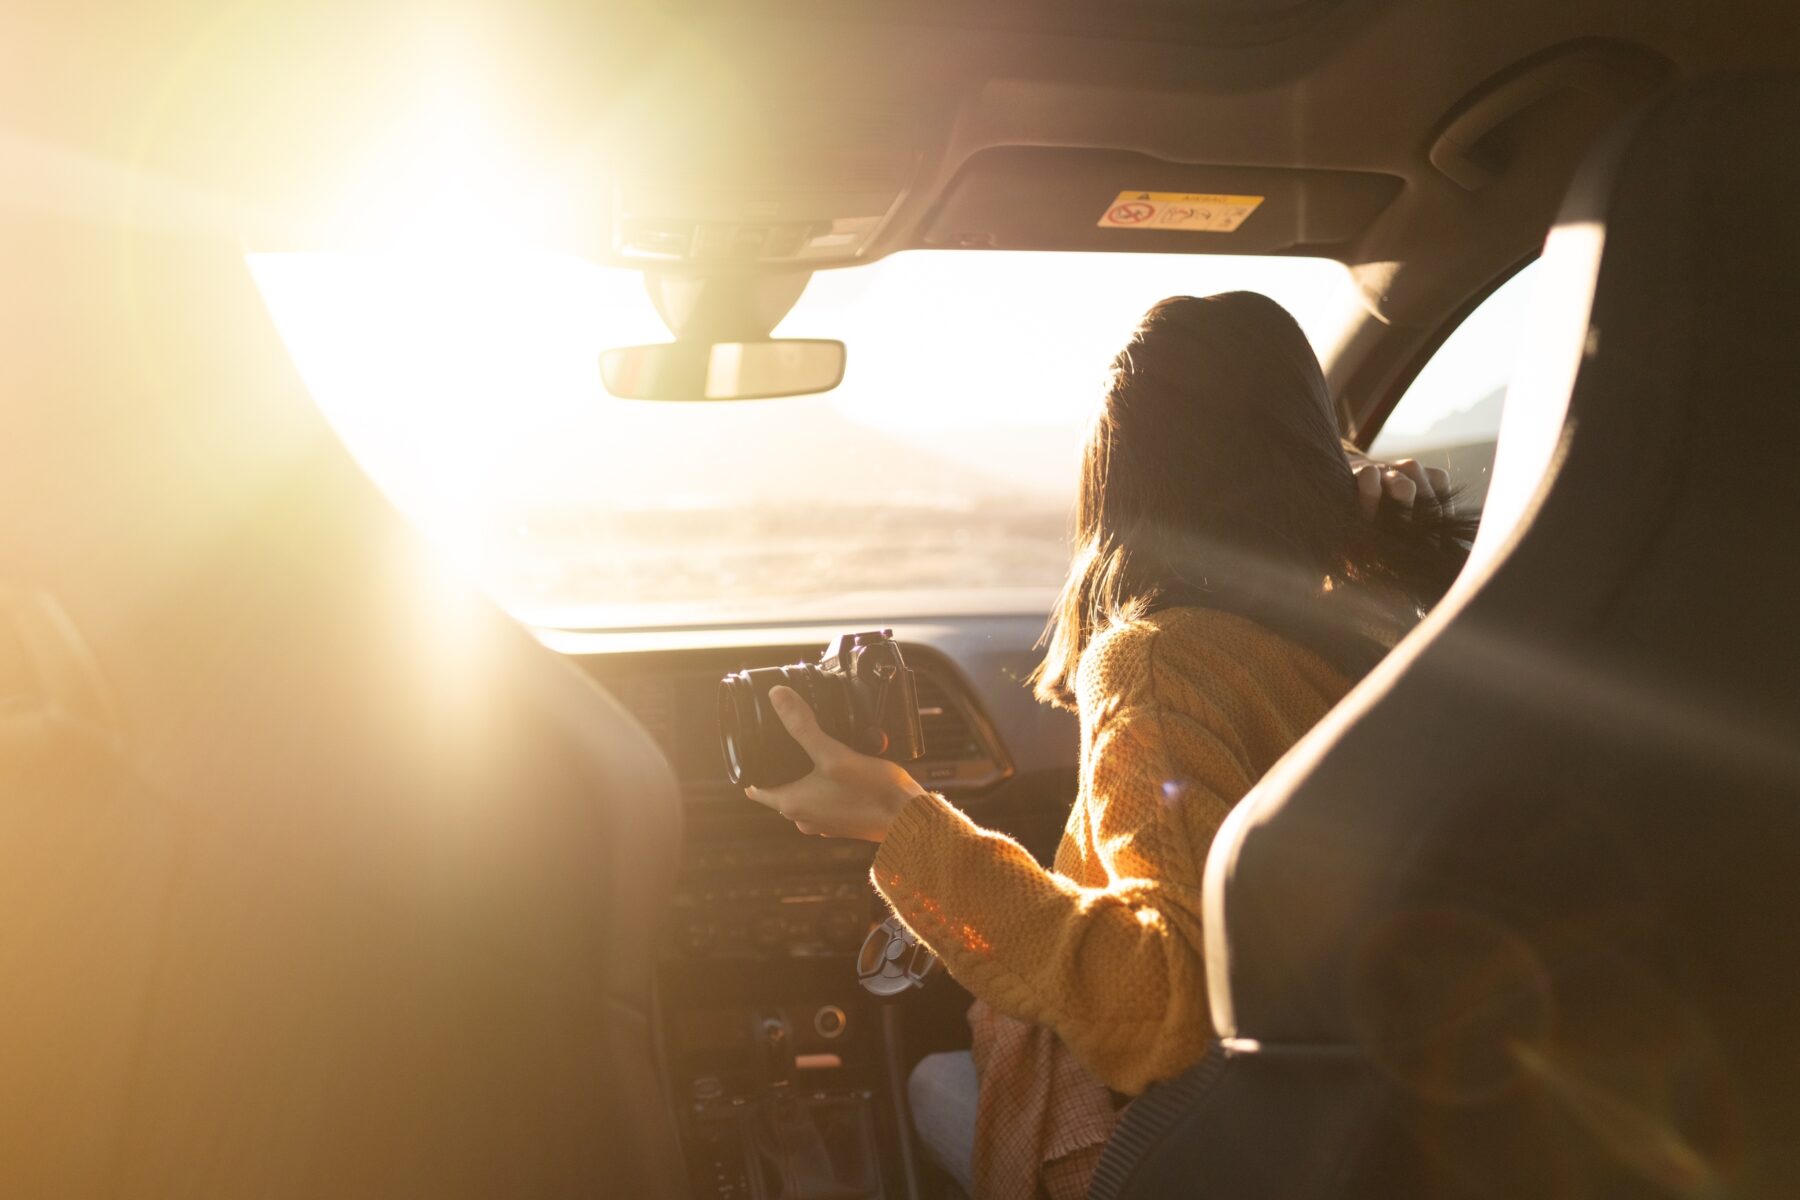 Sonnenbrand durchs Fenster: Sunblocker auch im Auto und Büro?